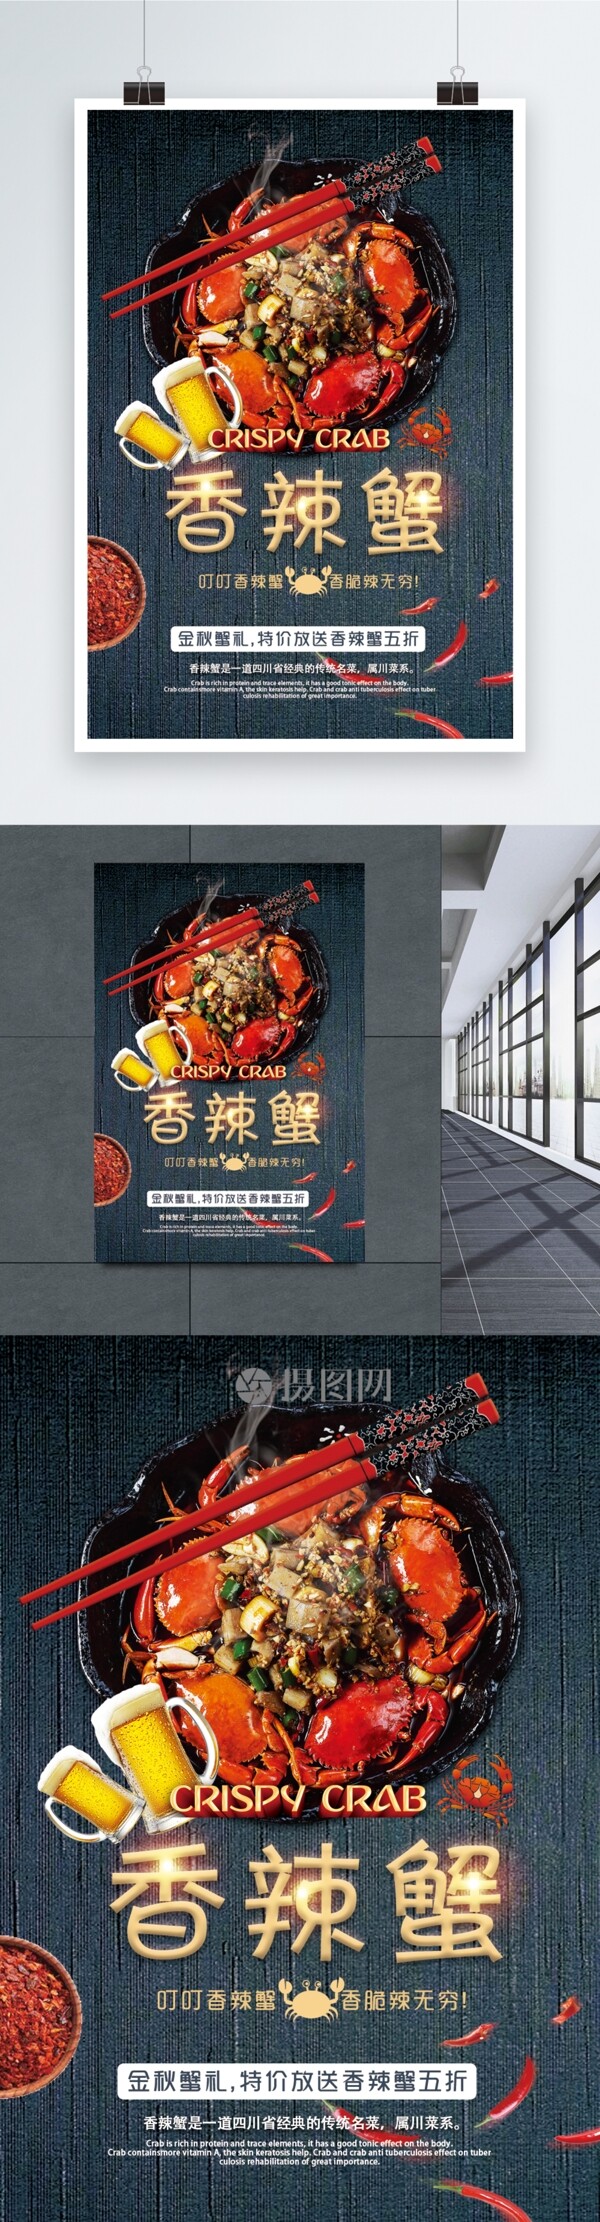 香辣蟹美食宣传海报